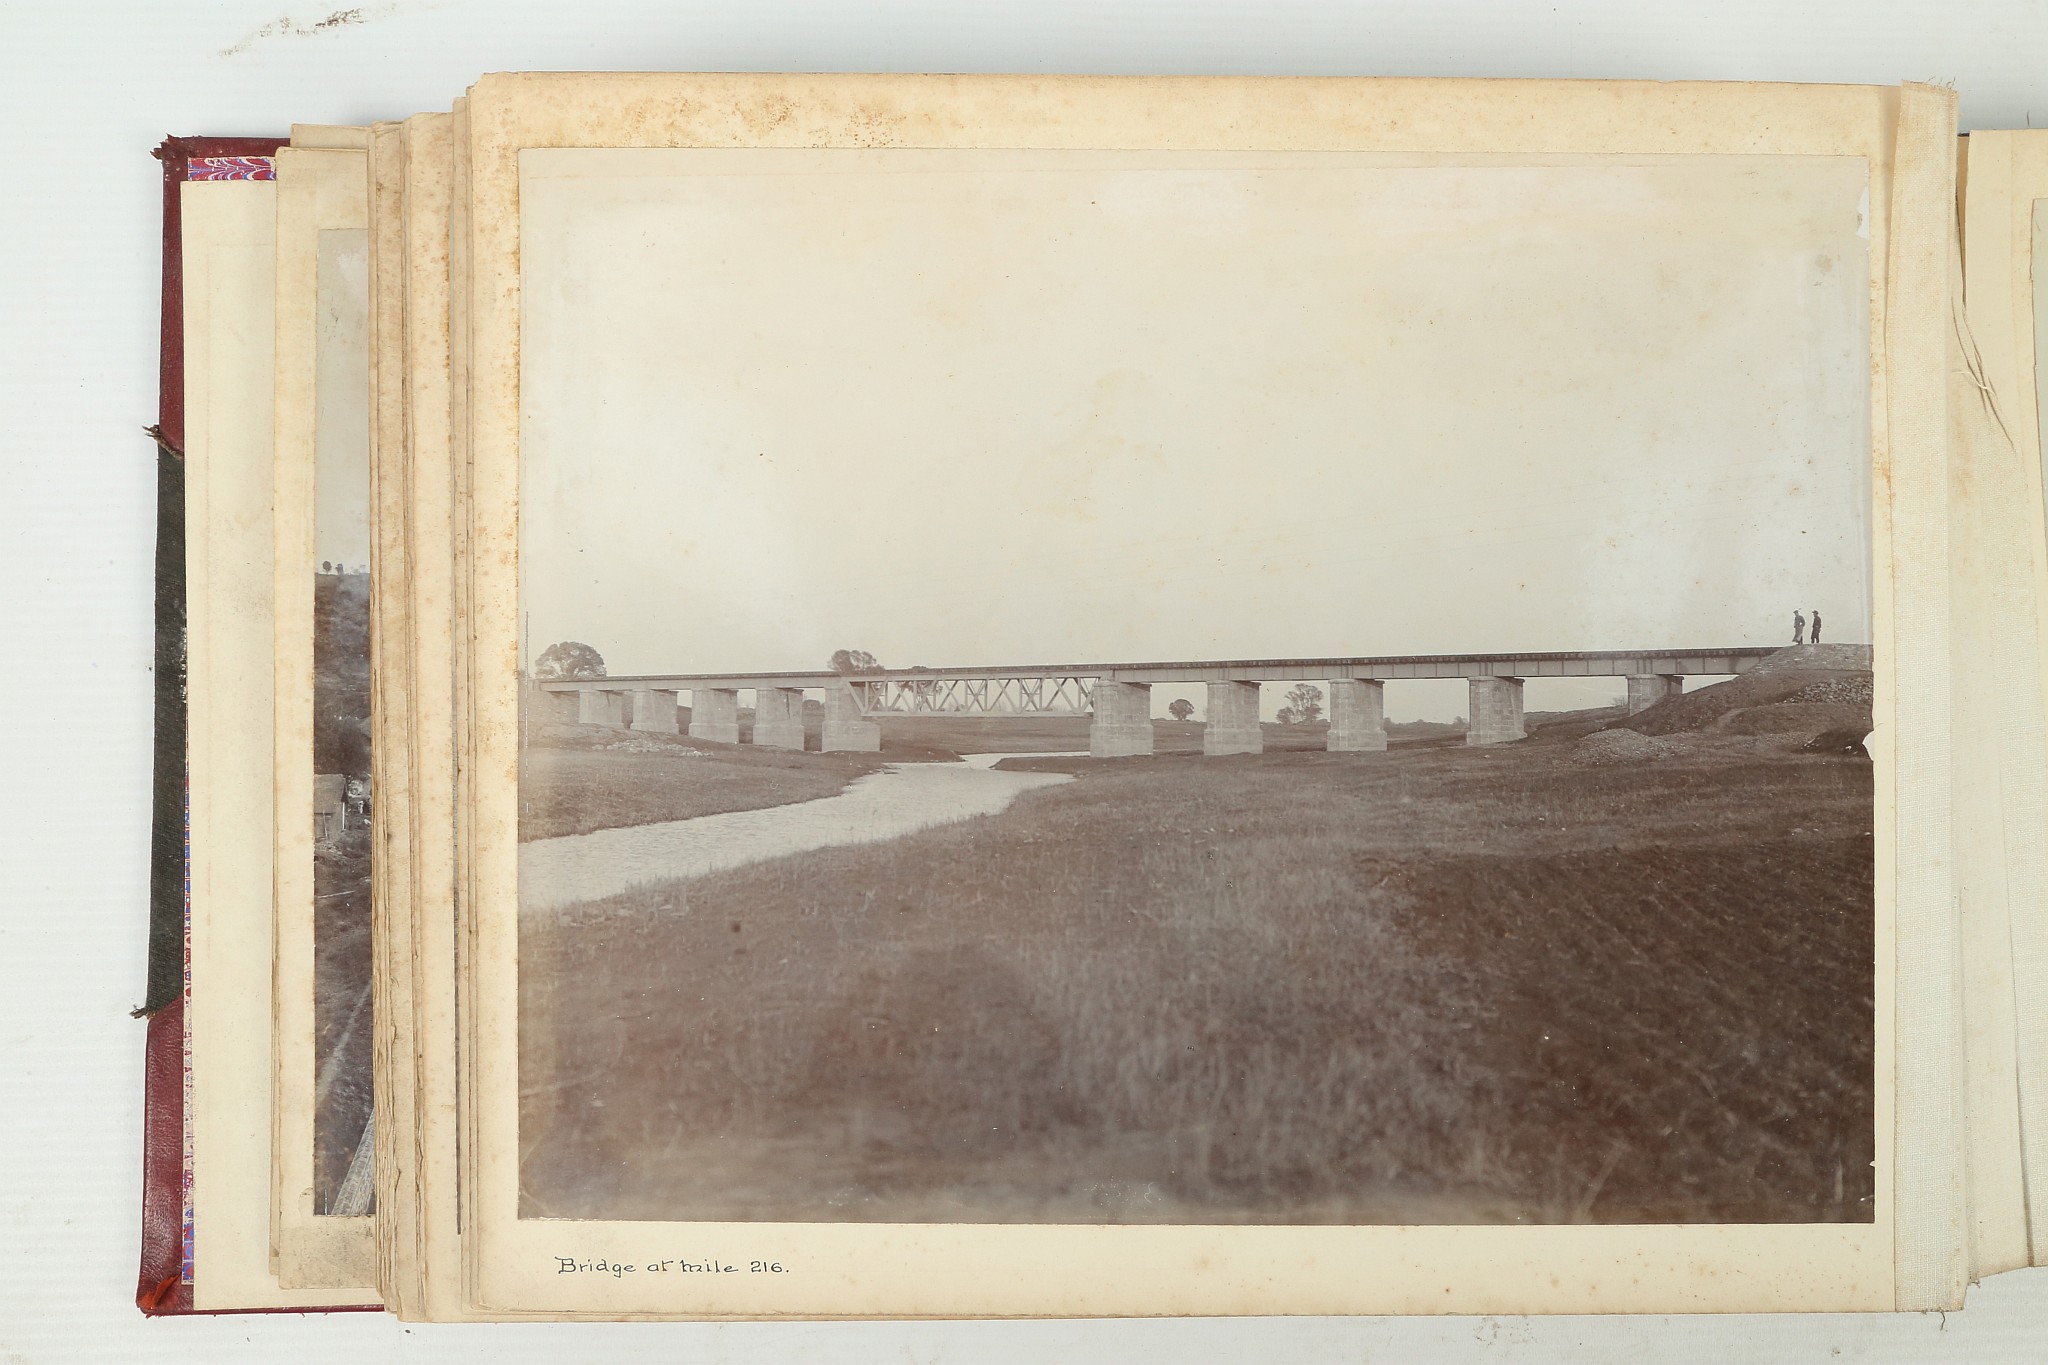 A PHOTOGRAPHIC ALBUM OF THE TIENTSIN-PUKOW RAILWAY - Image 42 of 60